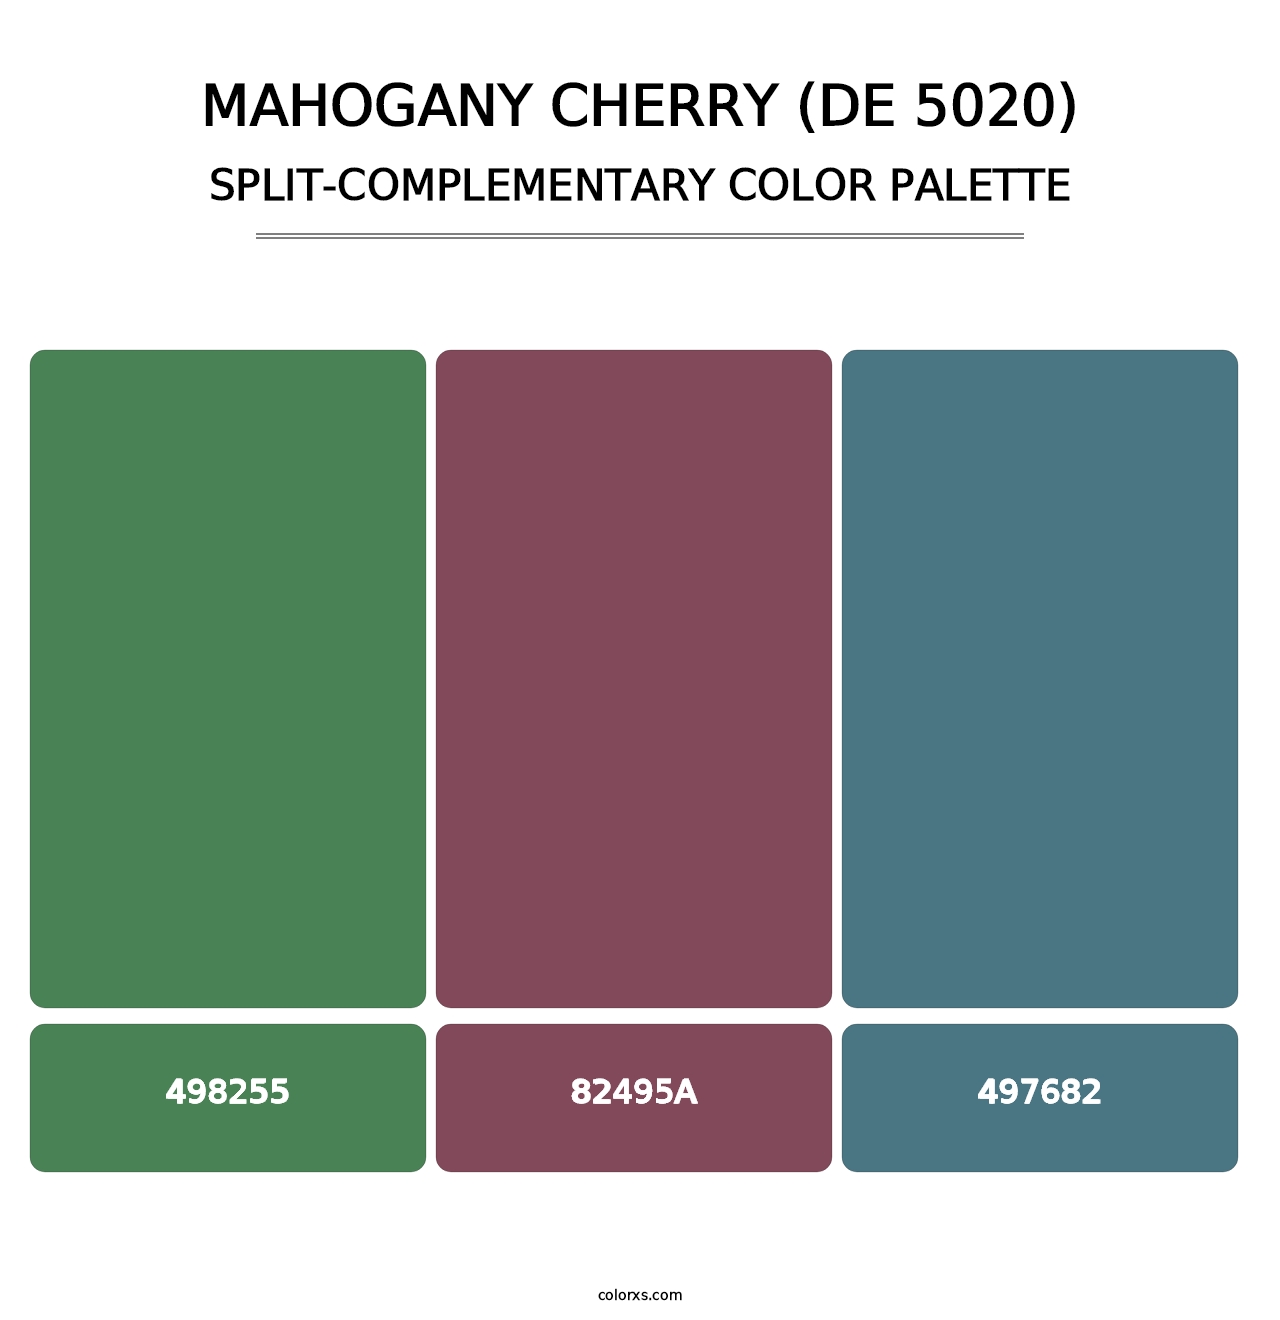 Mahogany Cherry (DE 5020) - Split-Complementary Color Palette